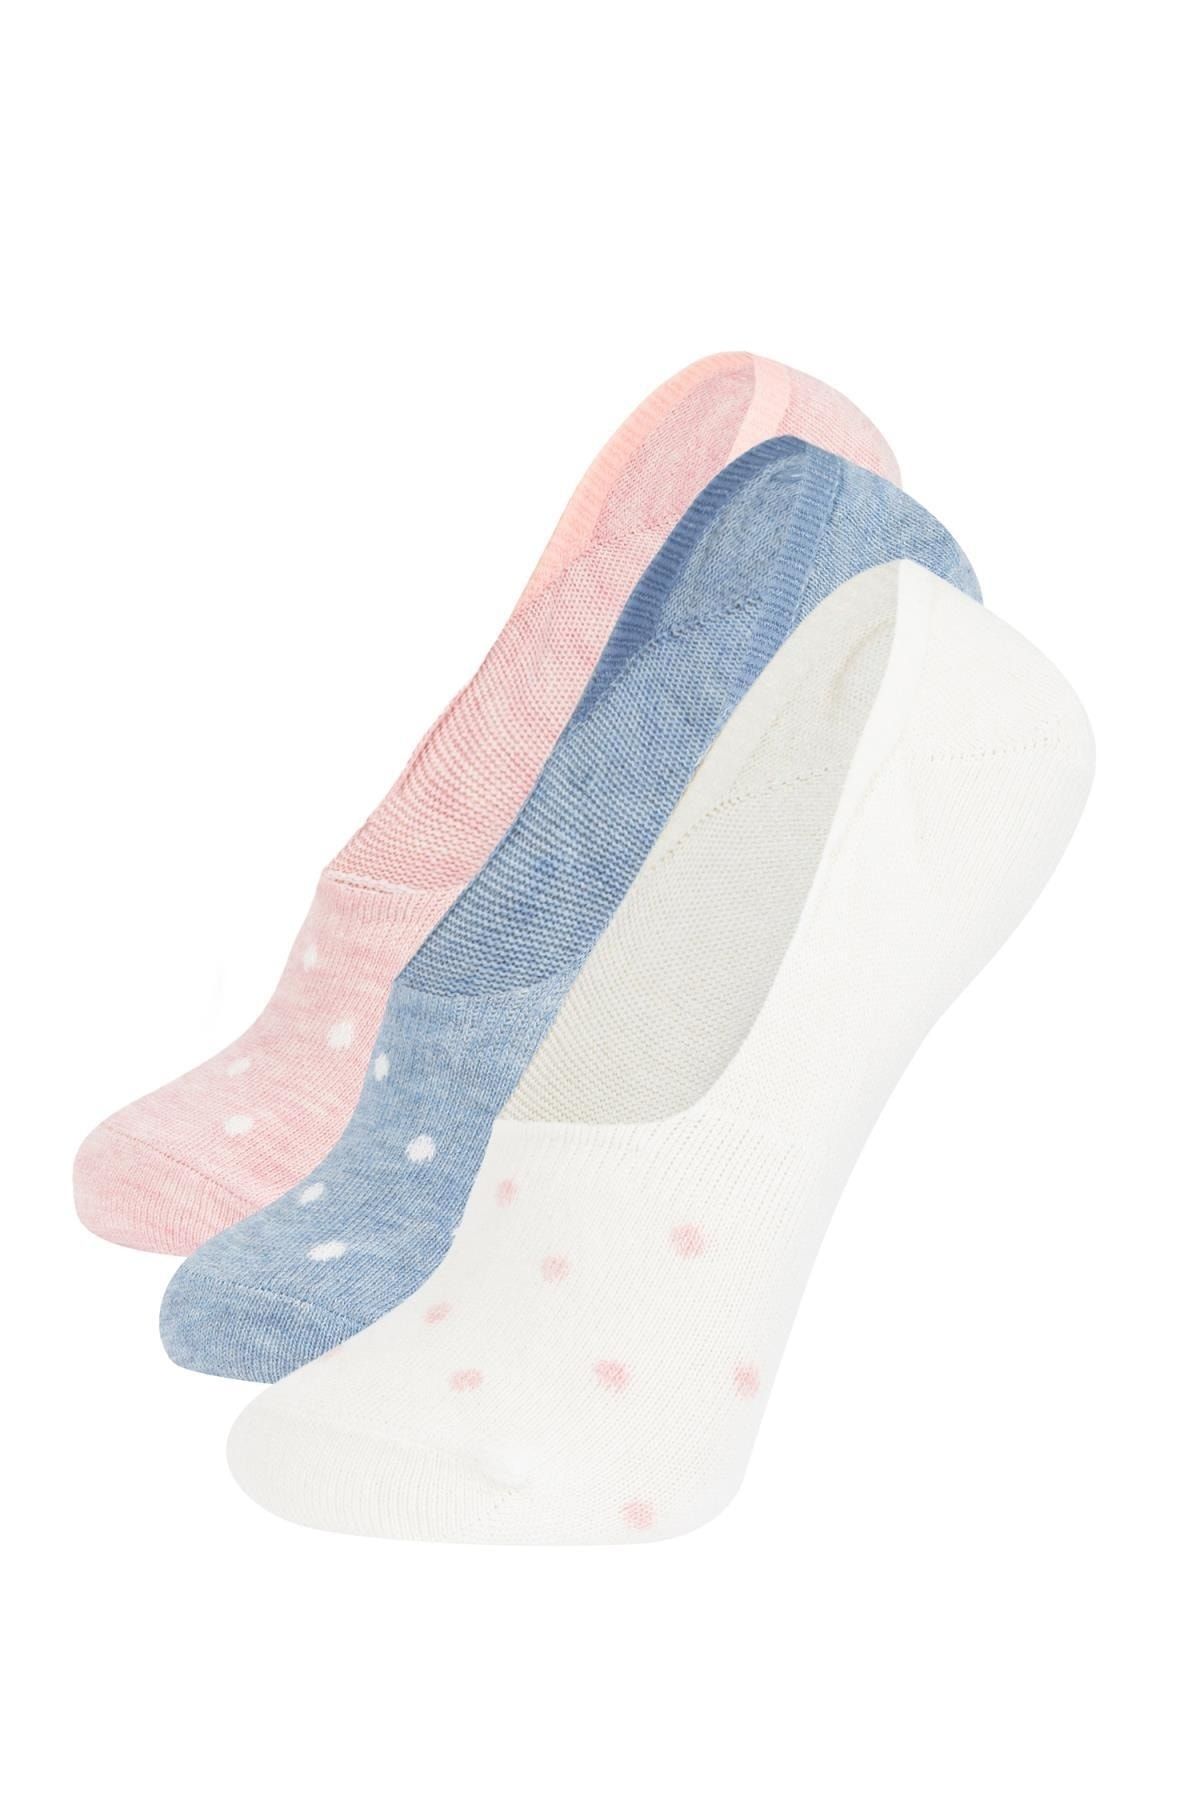 Defacto Kadın 3lü Pamuklu Babet Çorap Z7560azns